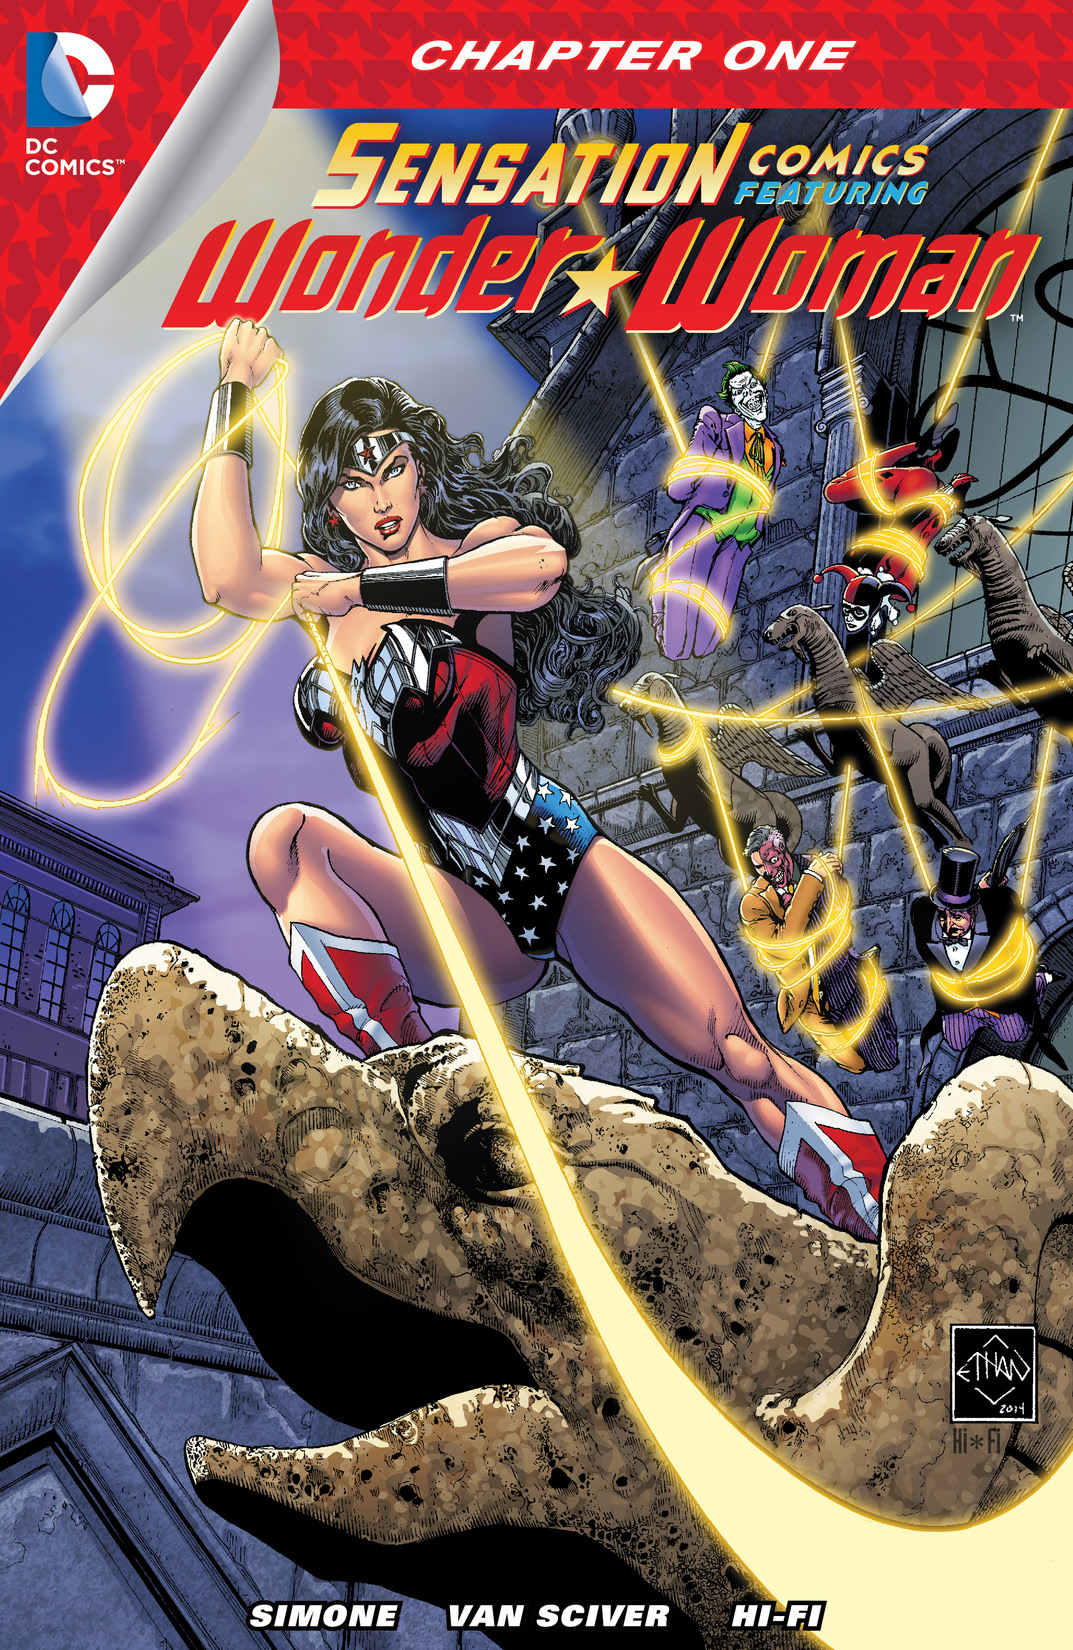 Sensation Comics Featuring Wonder Woman #1 preview images